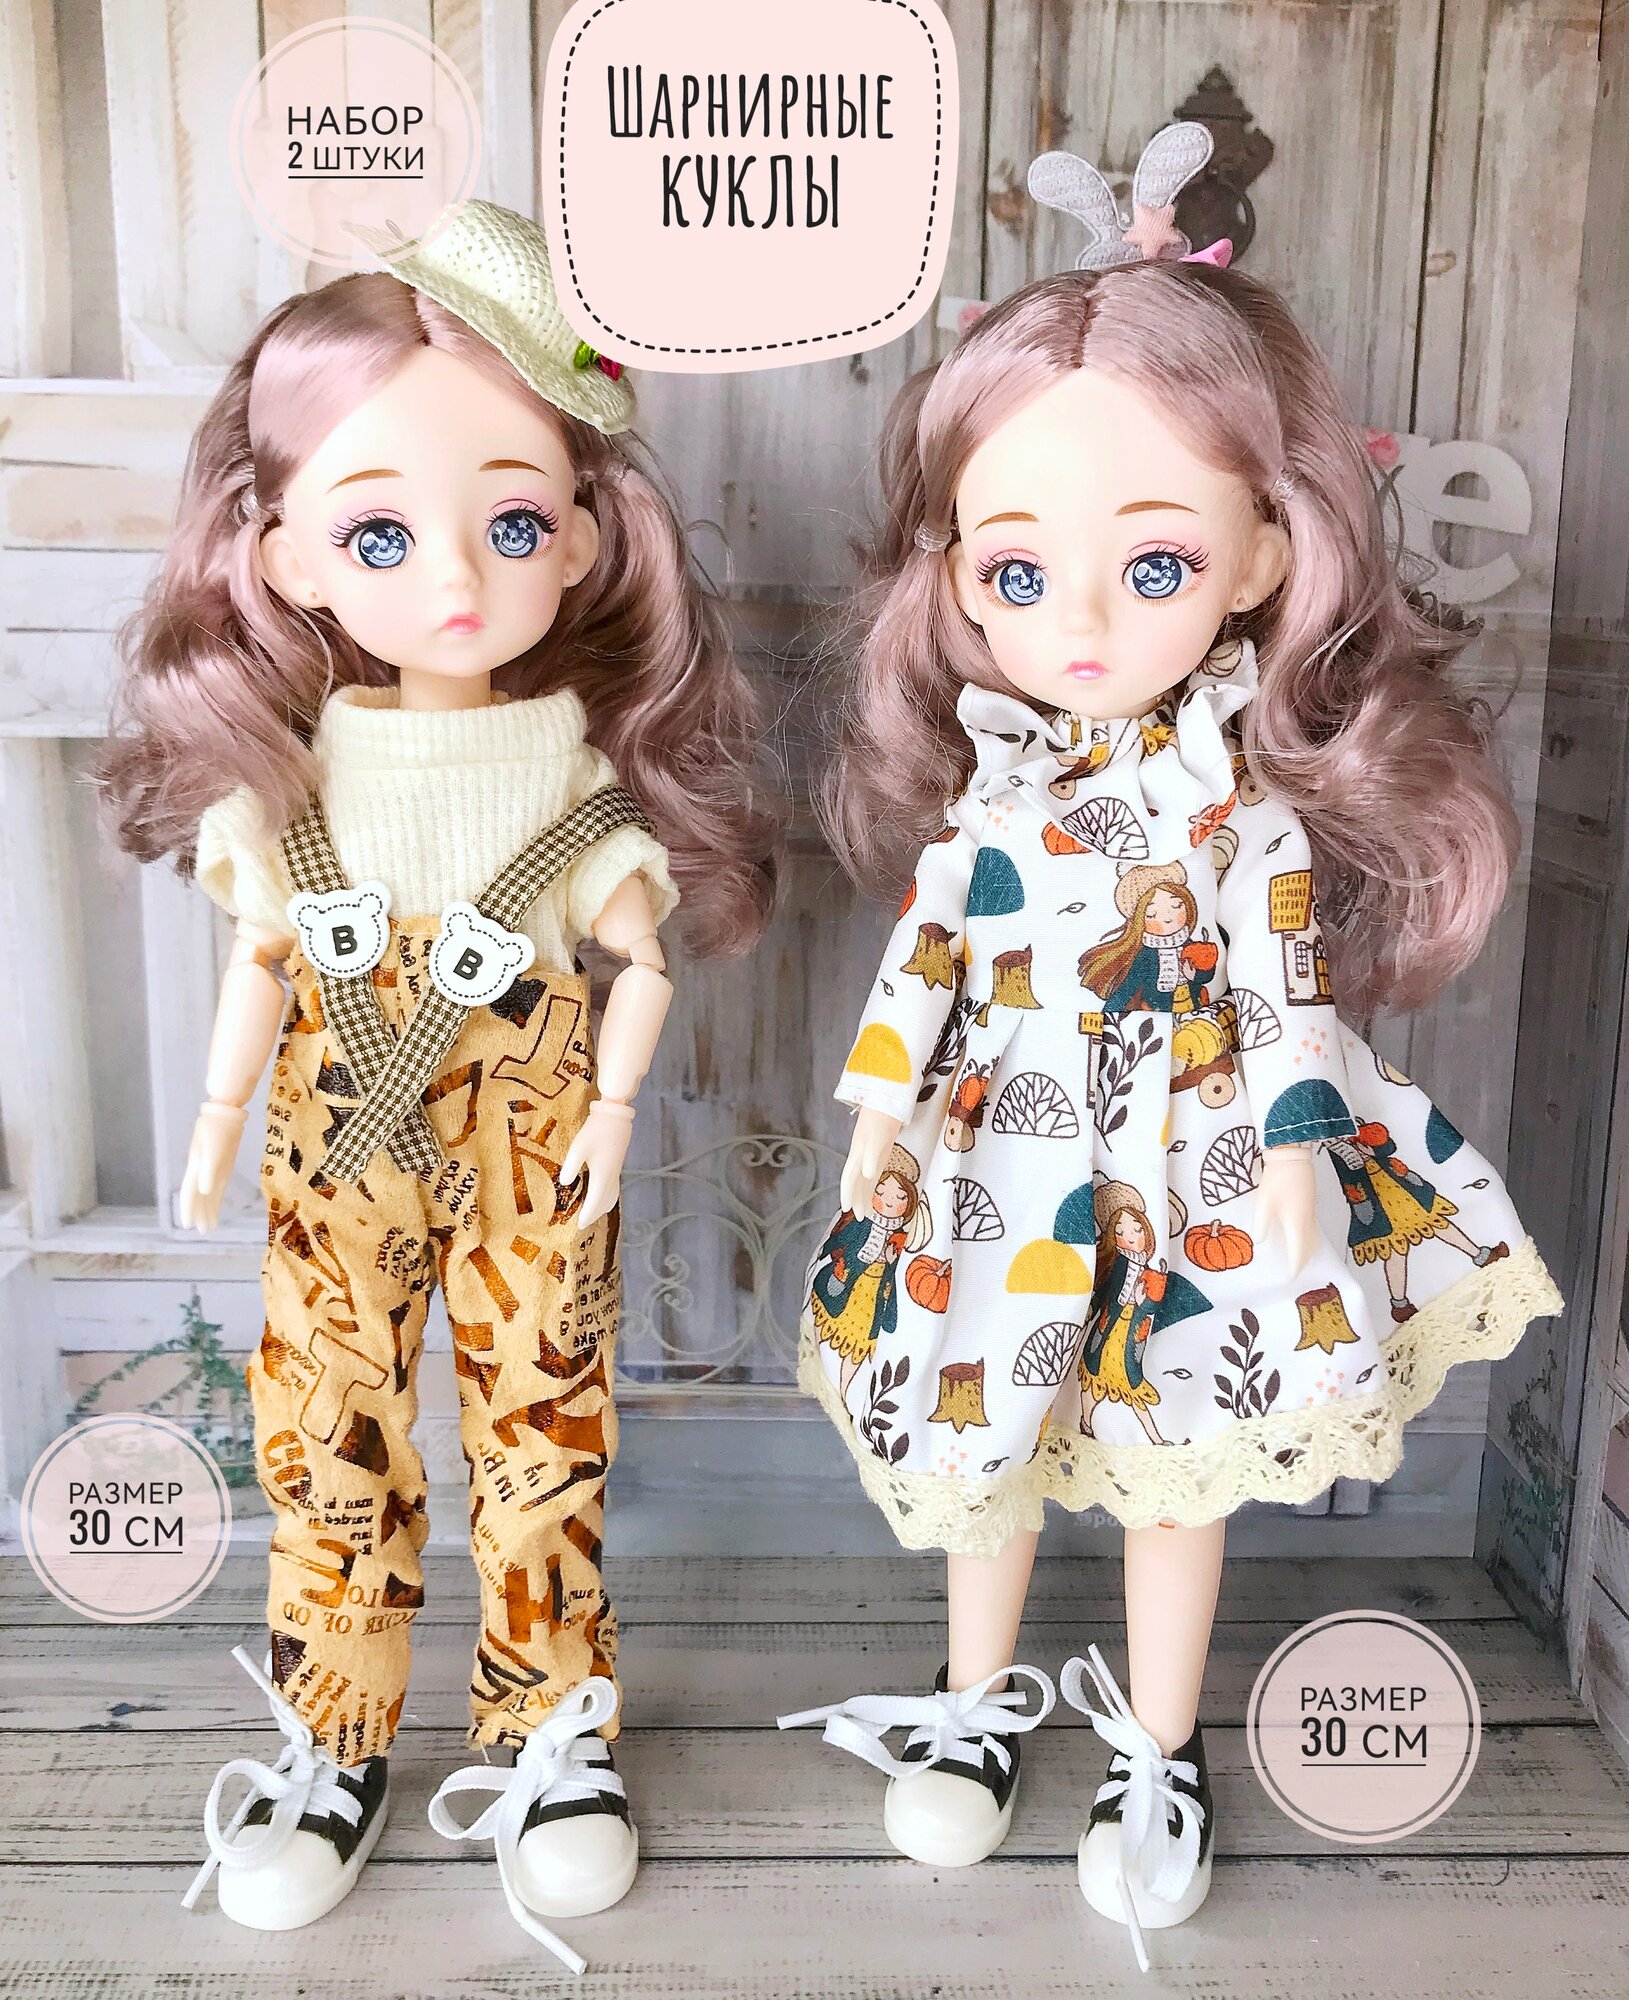 Куклы шарнирные набор 2шт рост 30 см